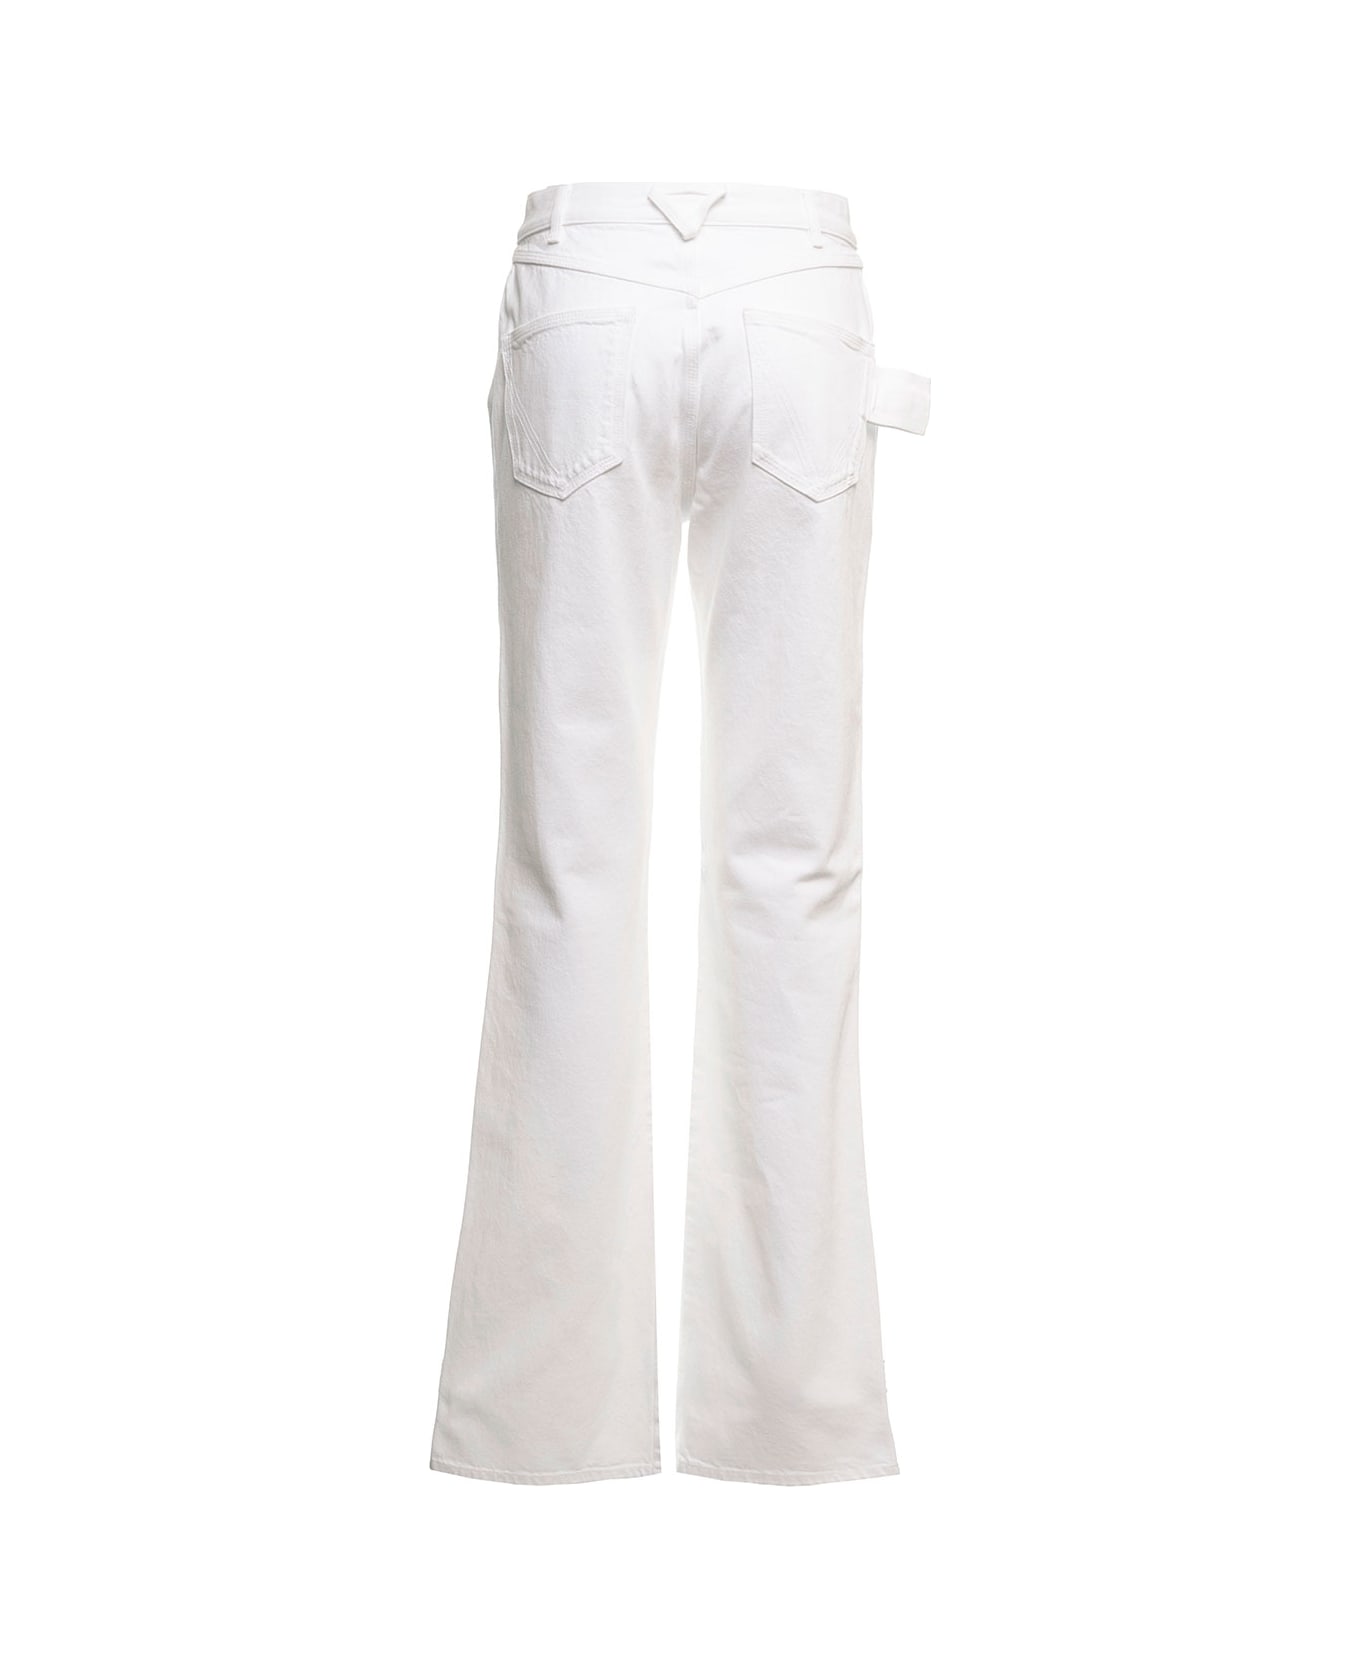 Bottega Veneta White Denim Flared Jeans  Bottega Veneta Woman - White